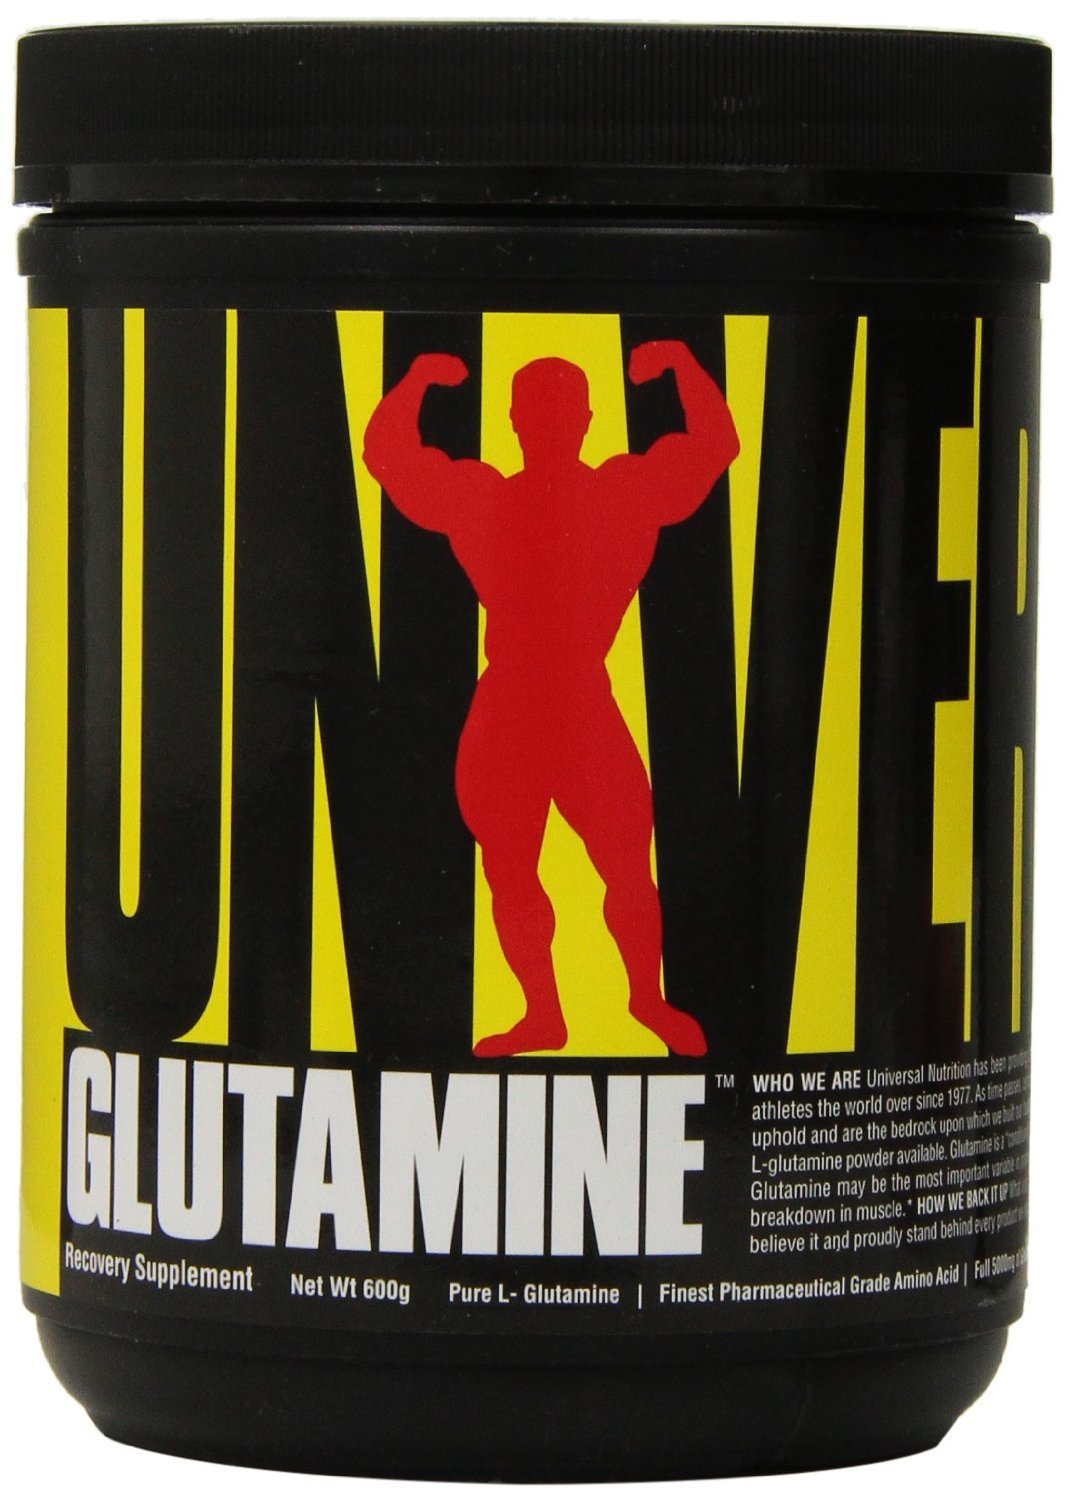 Glutamine powder, 600 g, Universal Nutrition. Glutamina. Mass Gain recuperación Anti-catabolic properties 